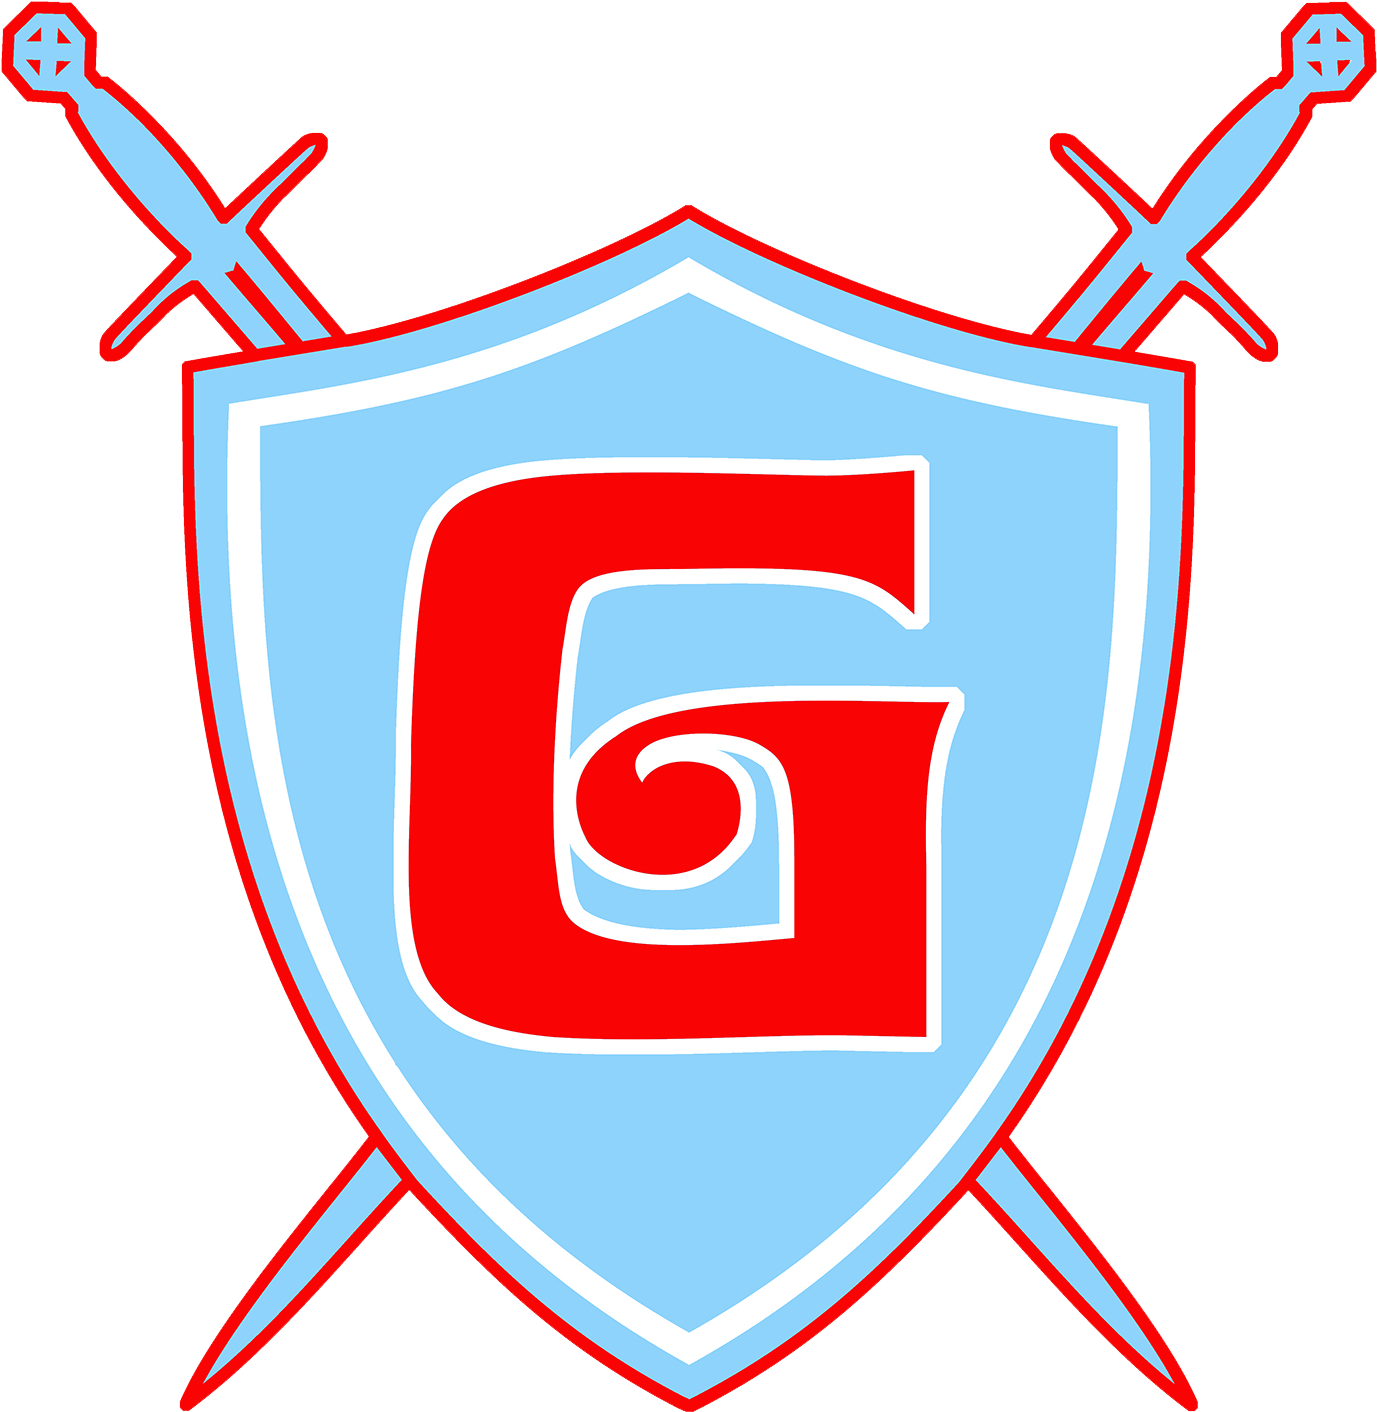 Ganesha Giants - Ganesha High School Giants (1411x1452)